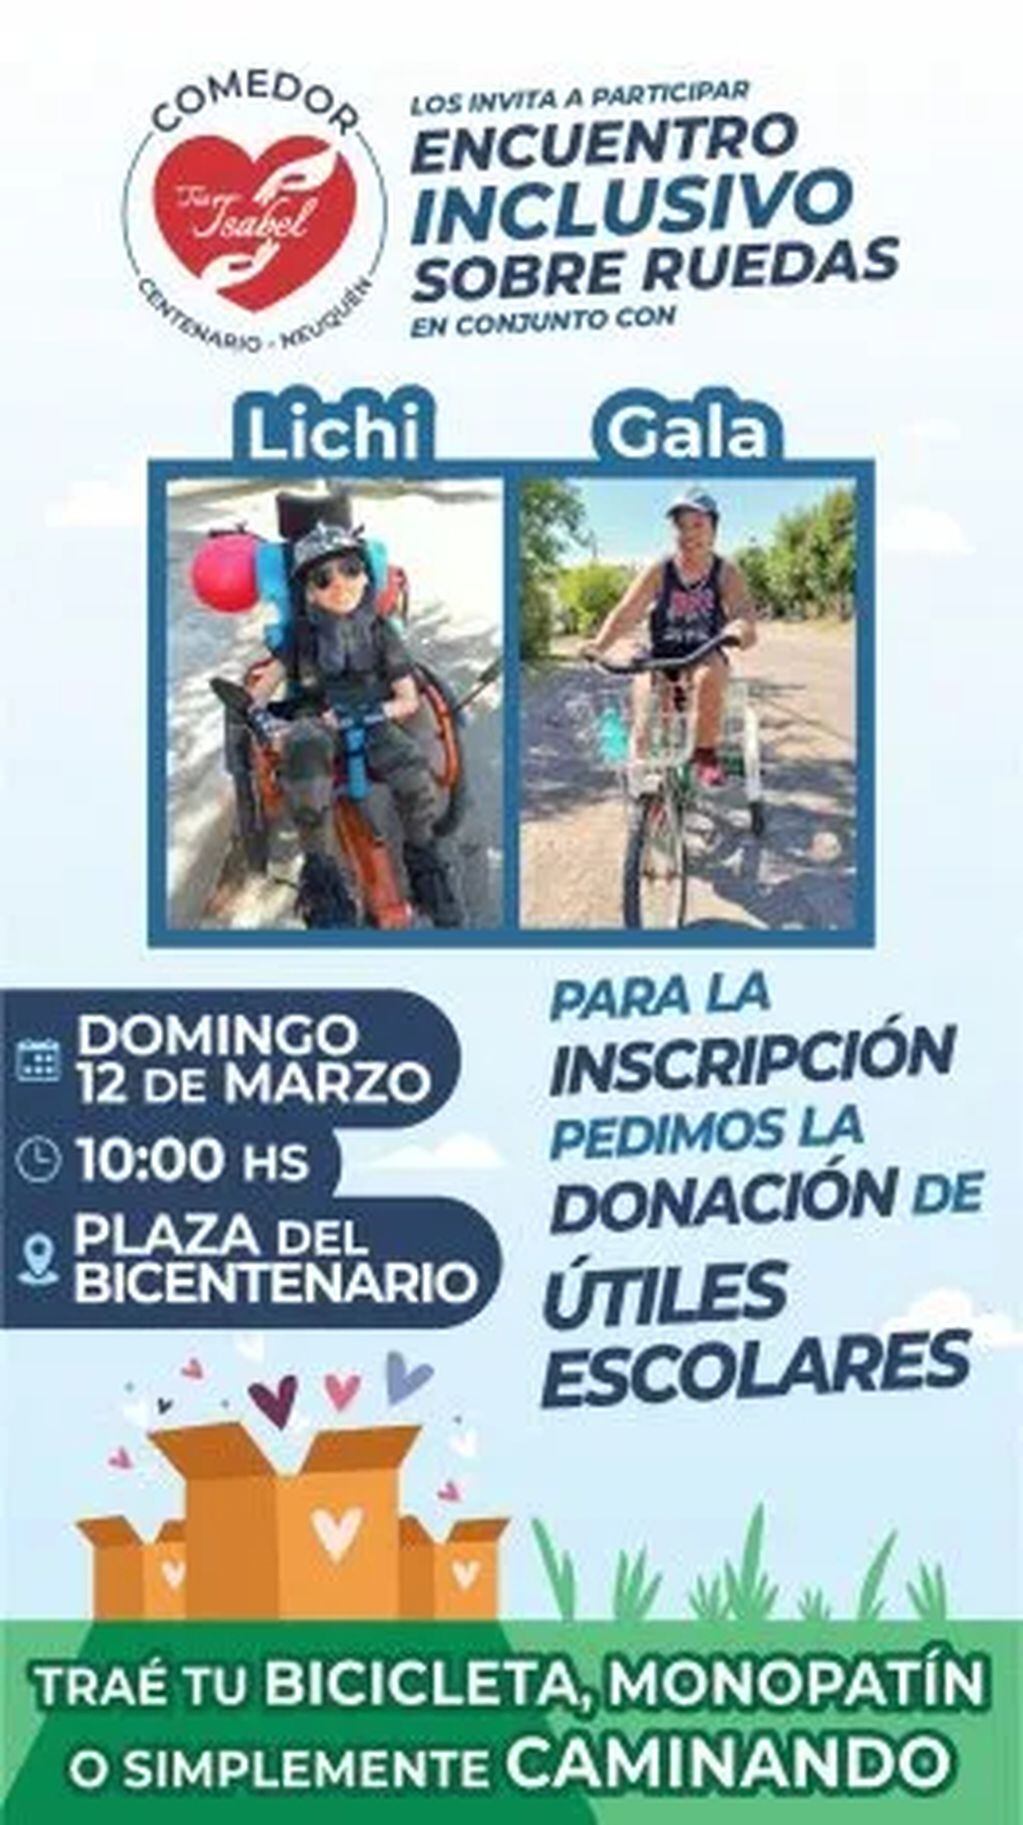 Gala y Lisandro convocan una bicicleteada solidaria e inclusiva en Centenario.